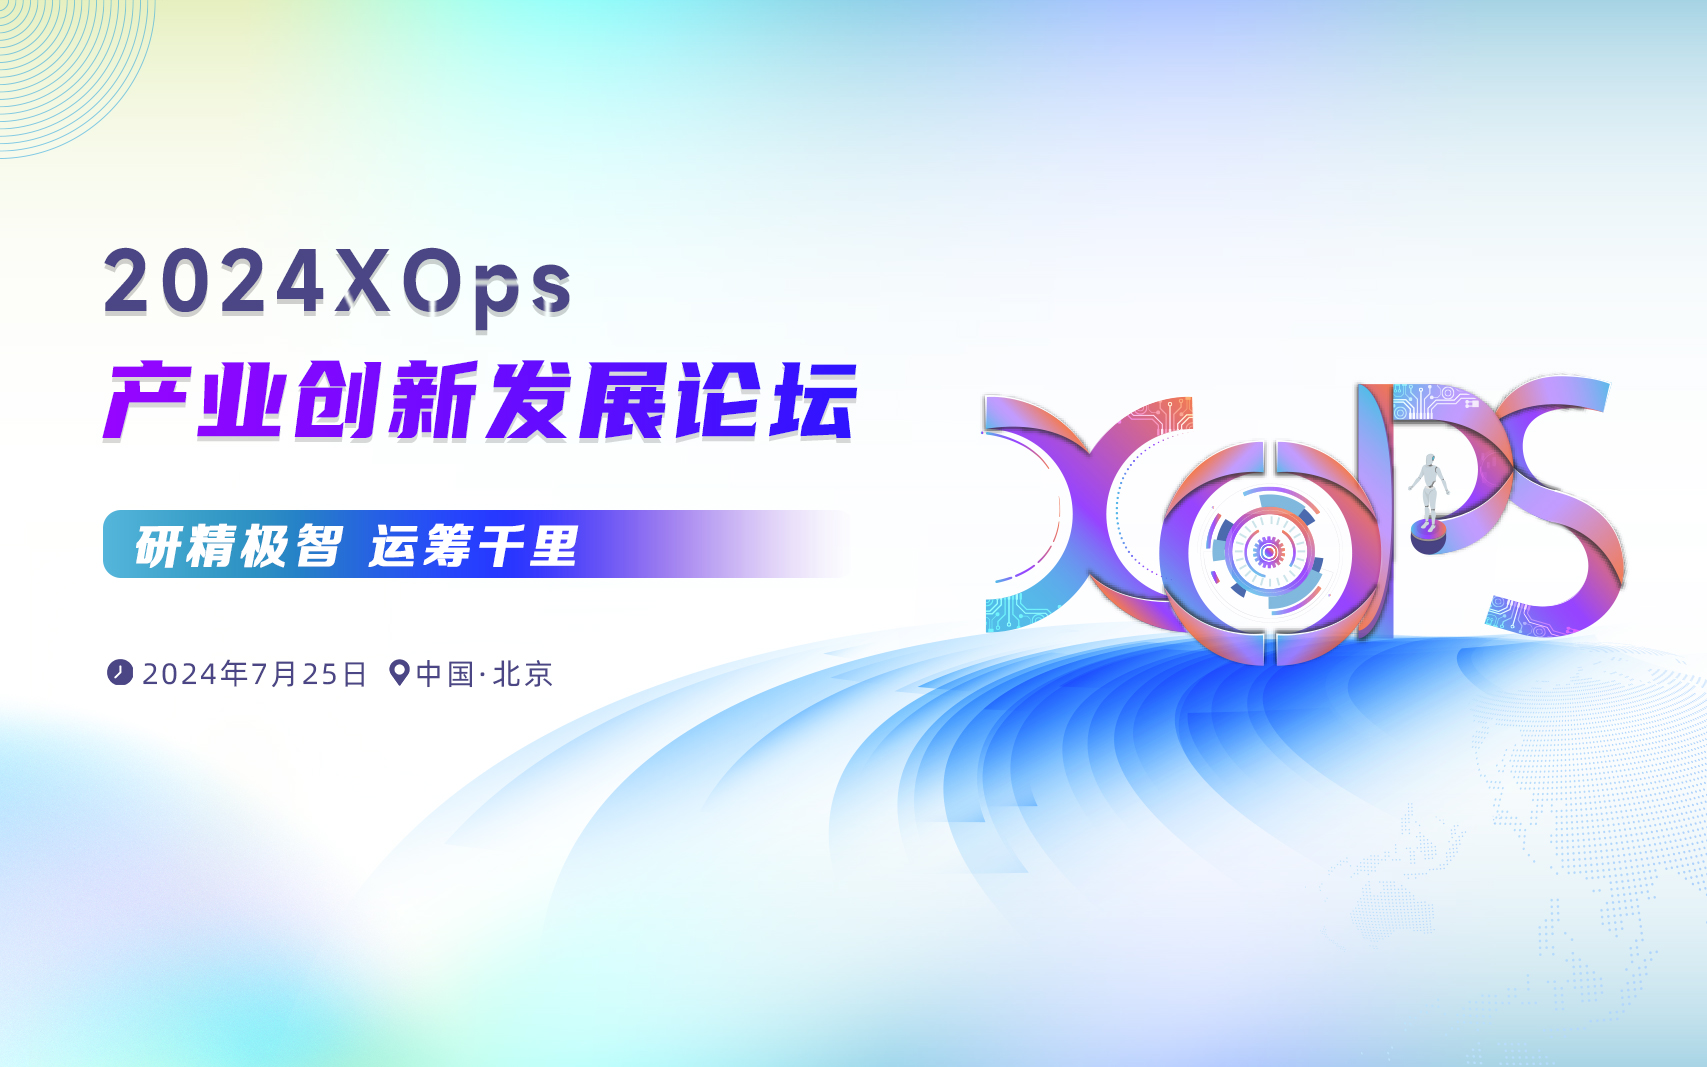 2024 XOps产业创新发展论坛